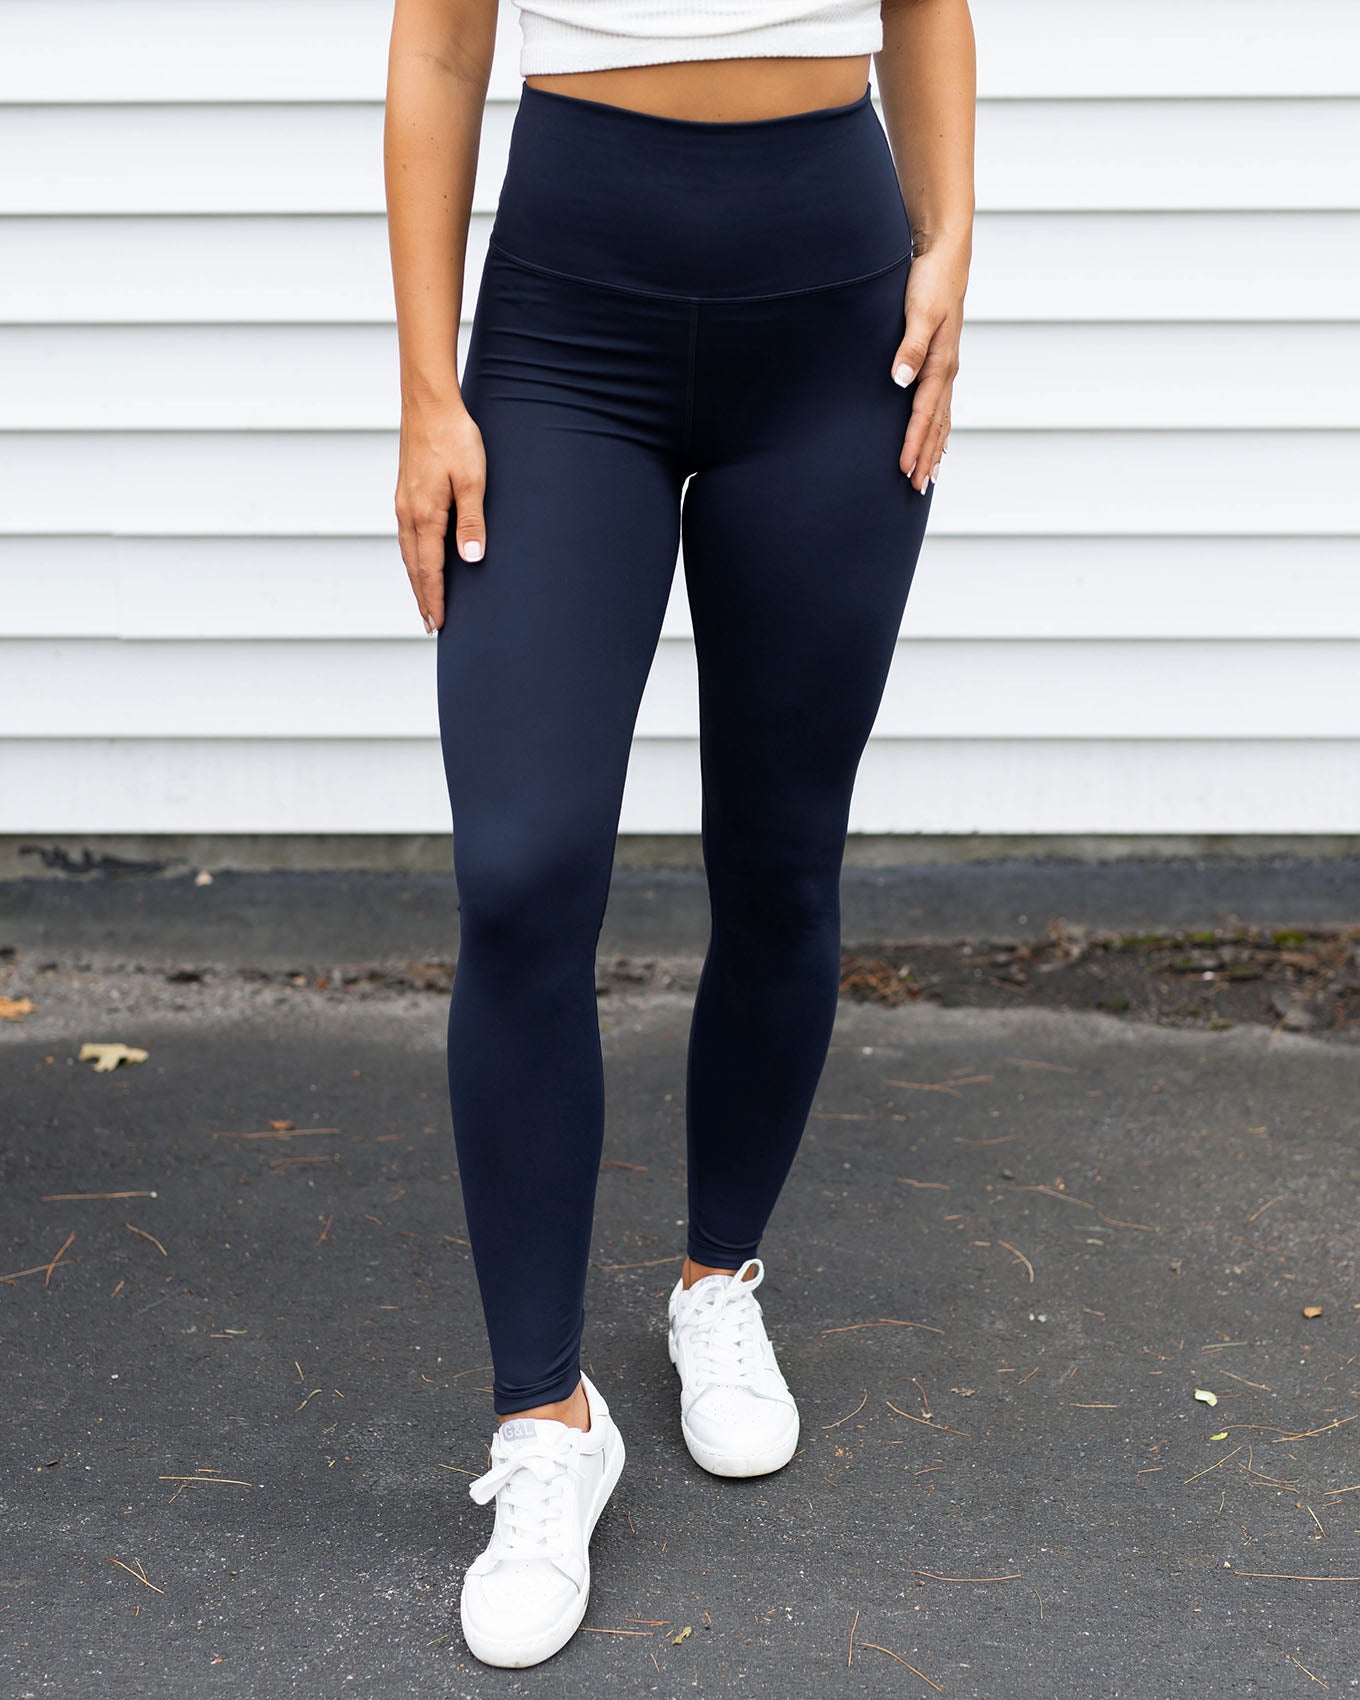 njshnmn Women Sport Fitness Leggings Women Fold Over Waist Stretch Yoga  Pants Leggings, Navy, M - Walmart.com